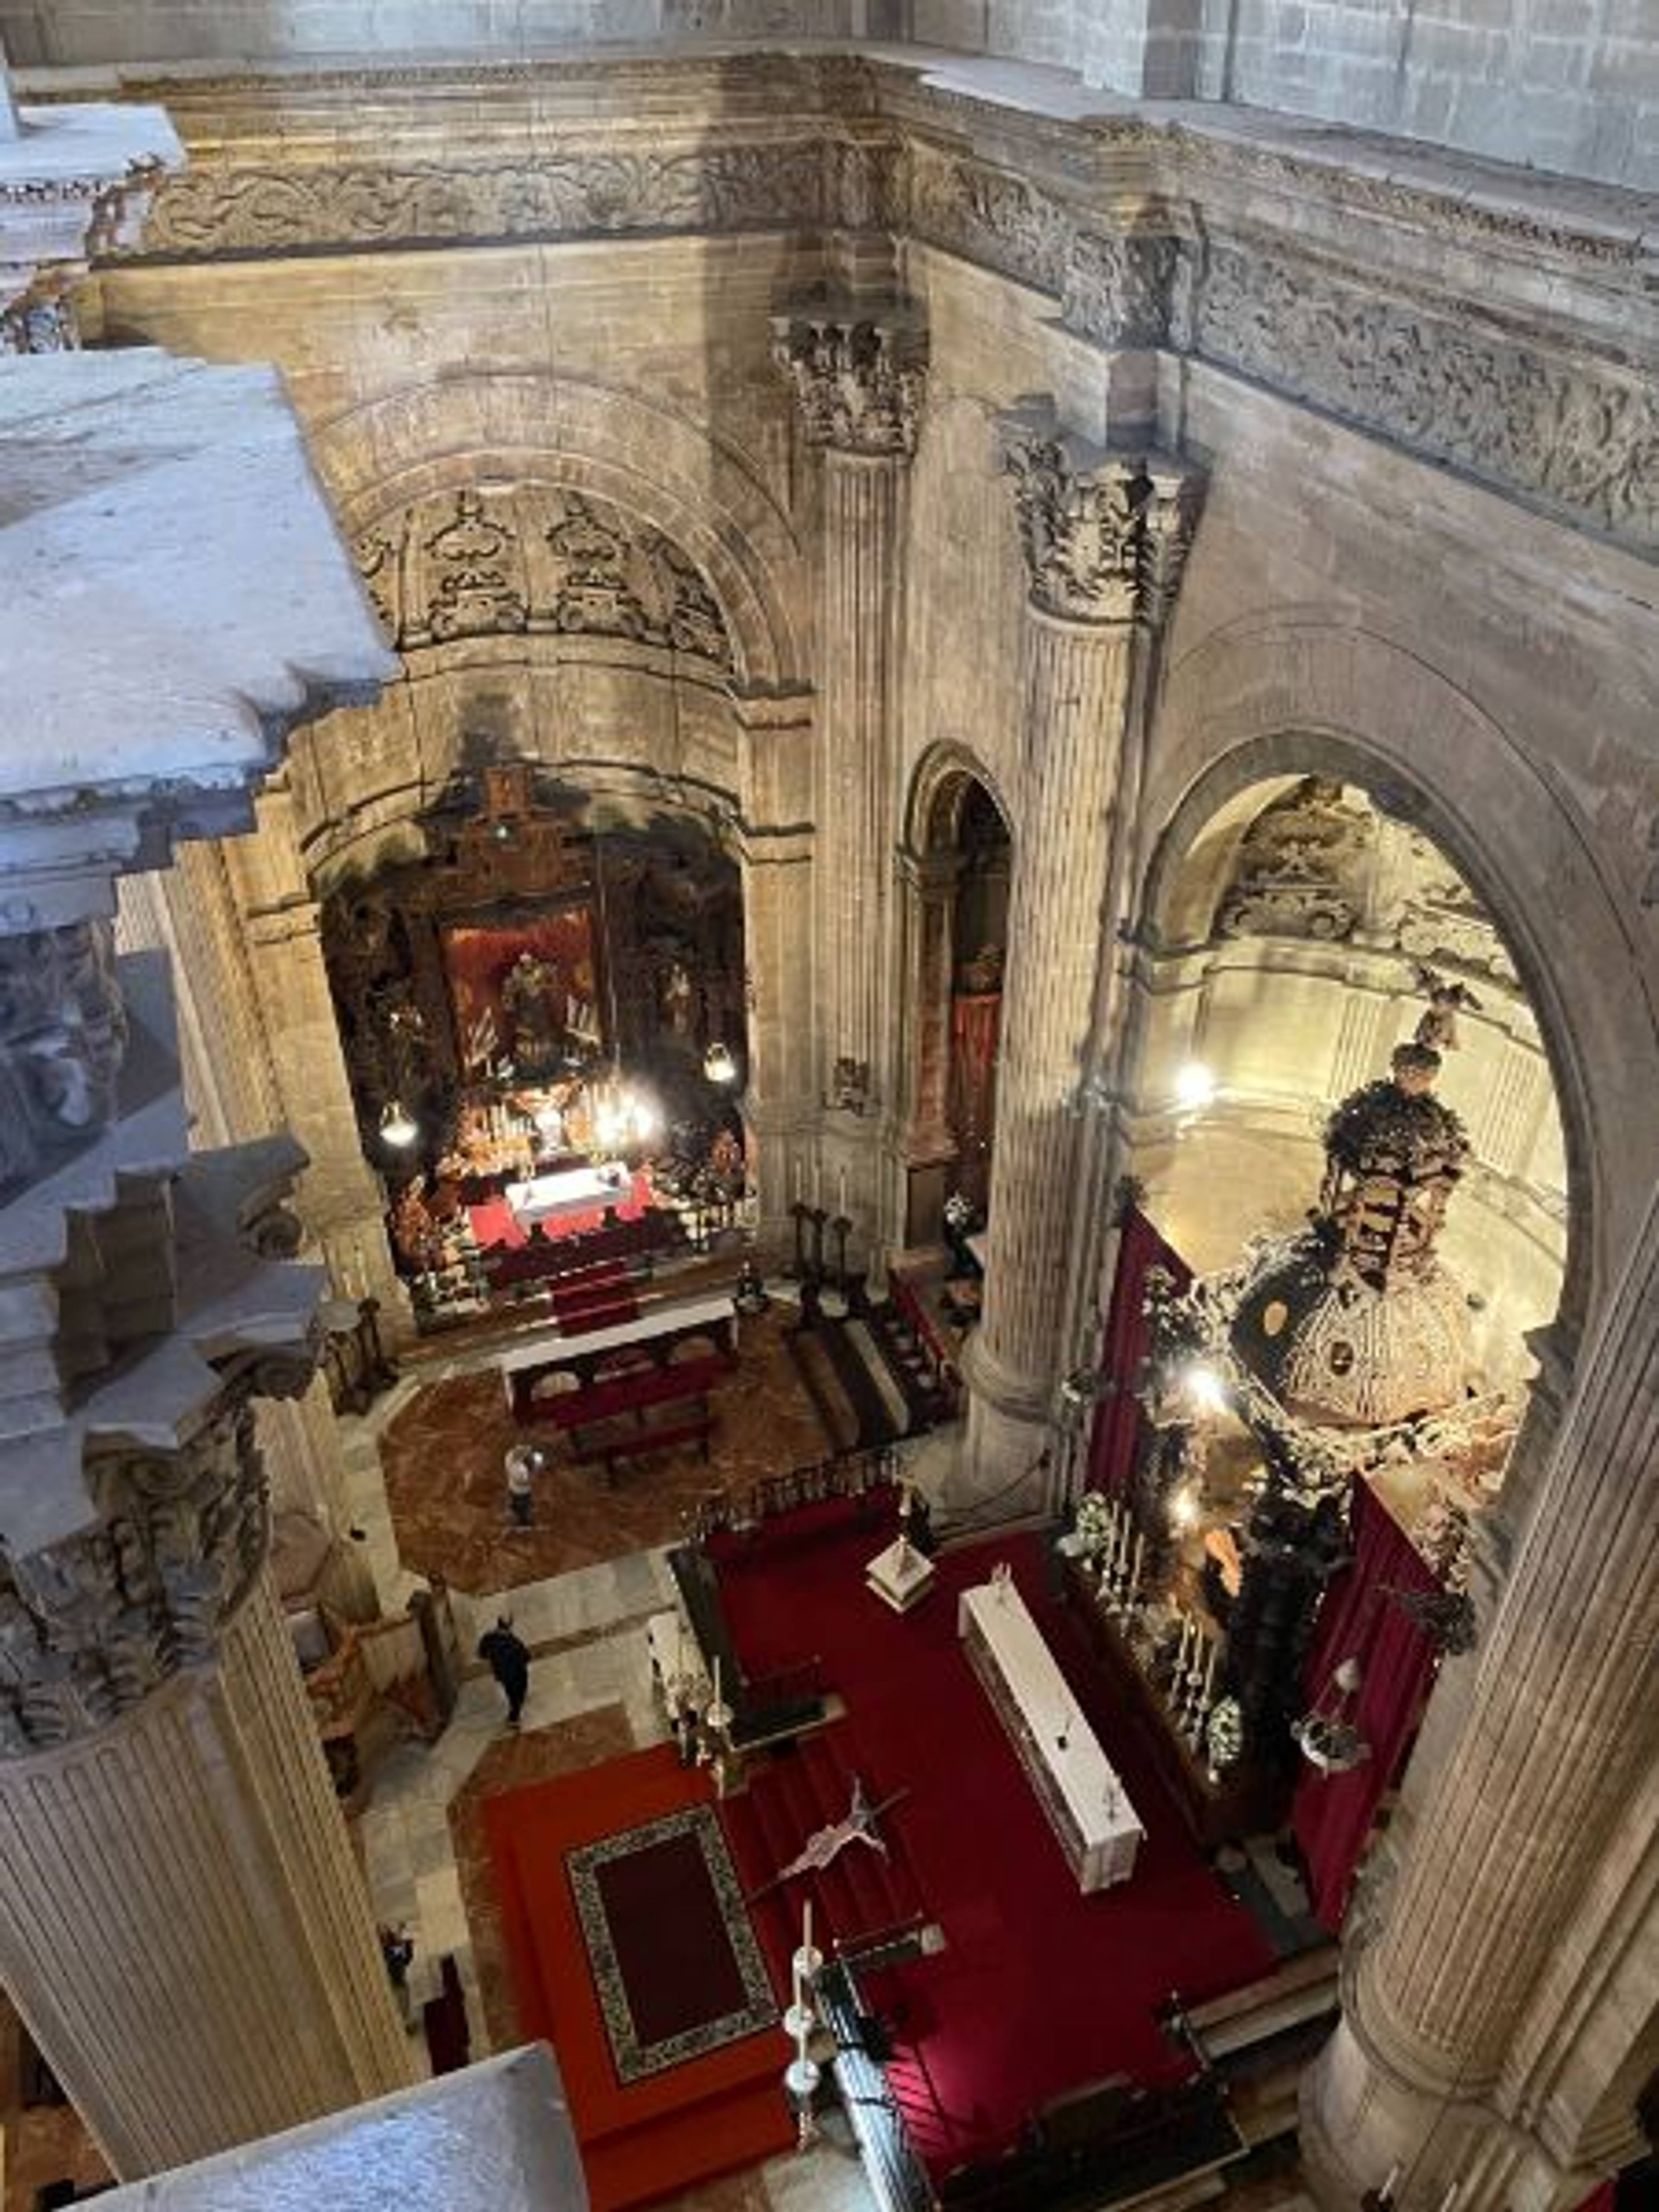 Wnętrze gotyckiego kościoła, ołtarz, czerwone dywany, widok z góry.